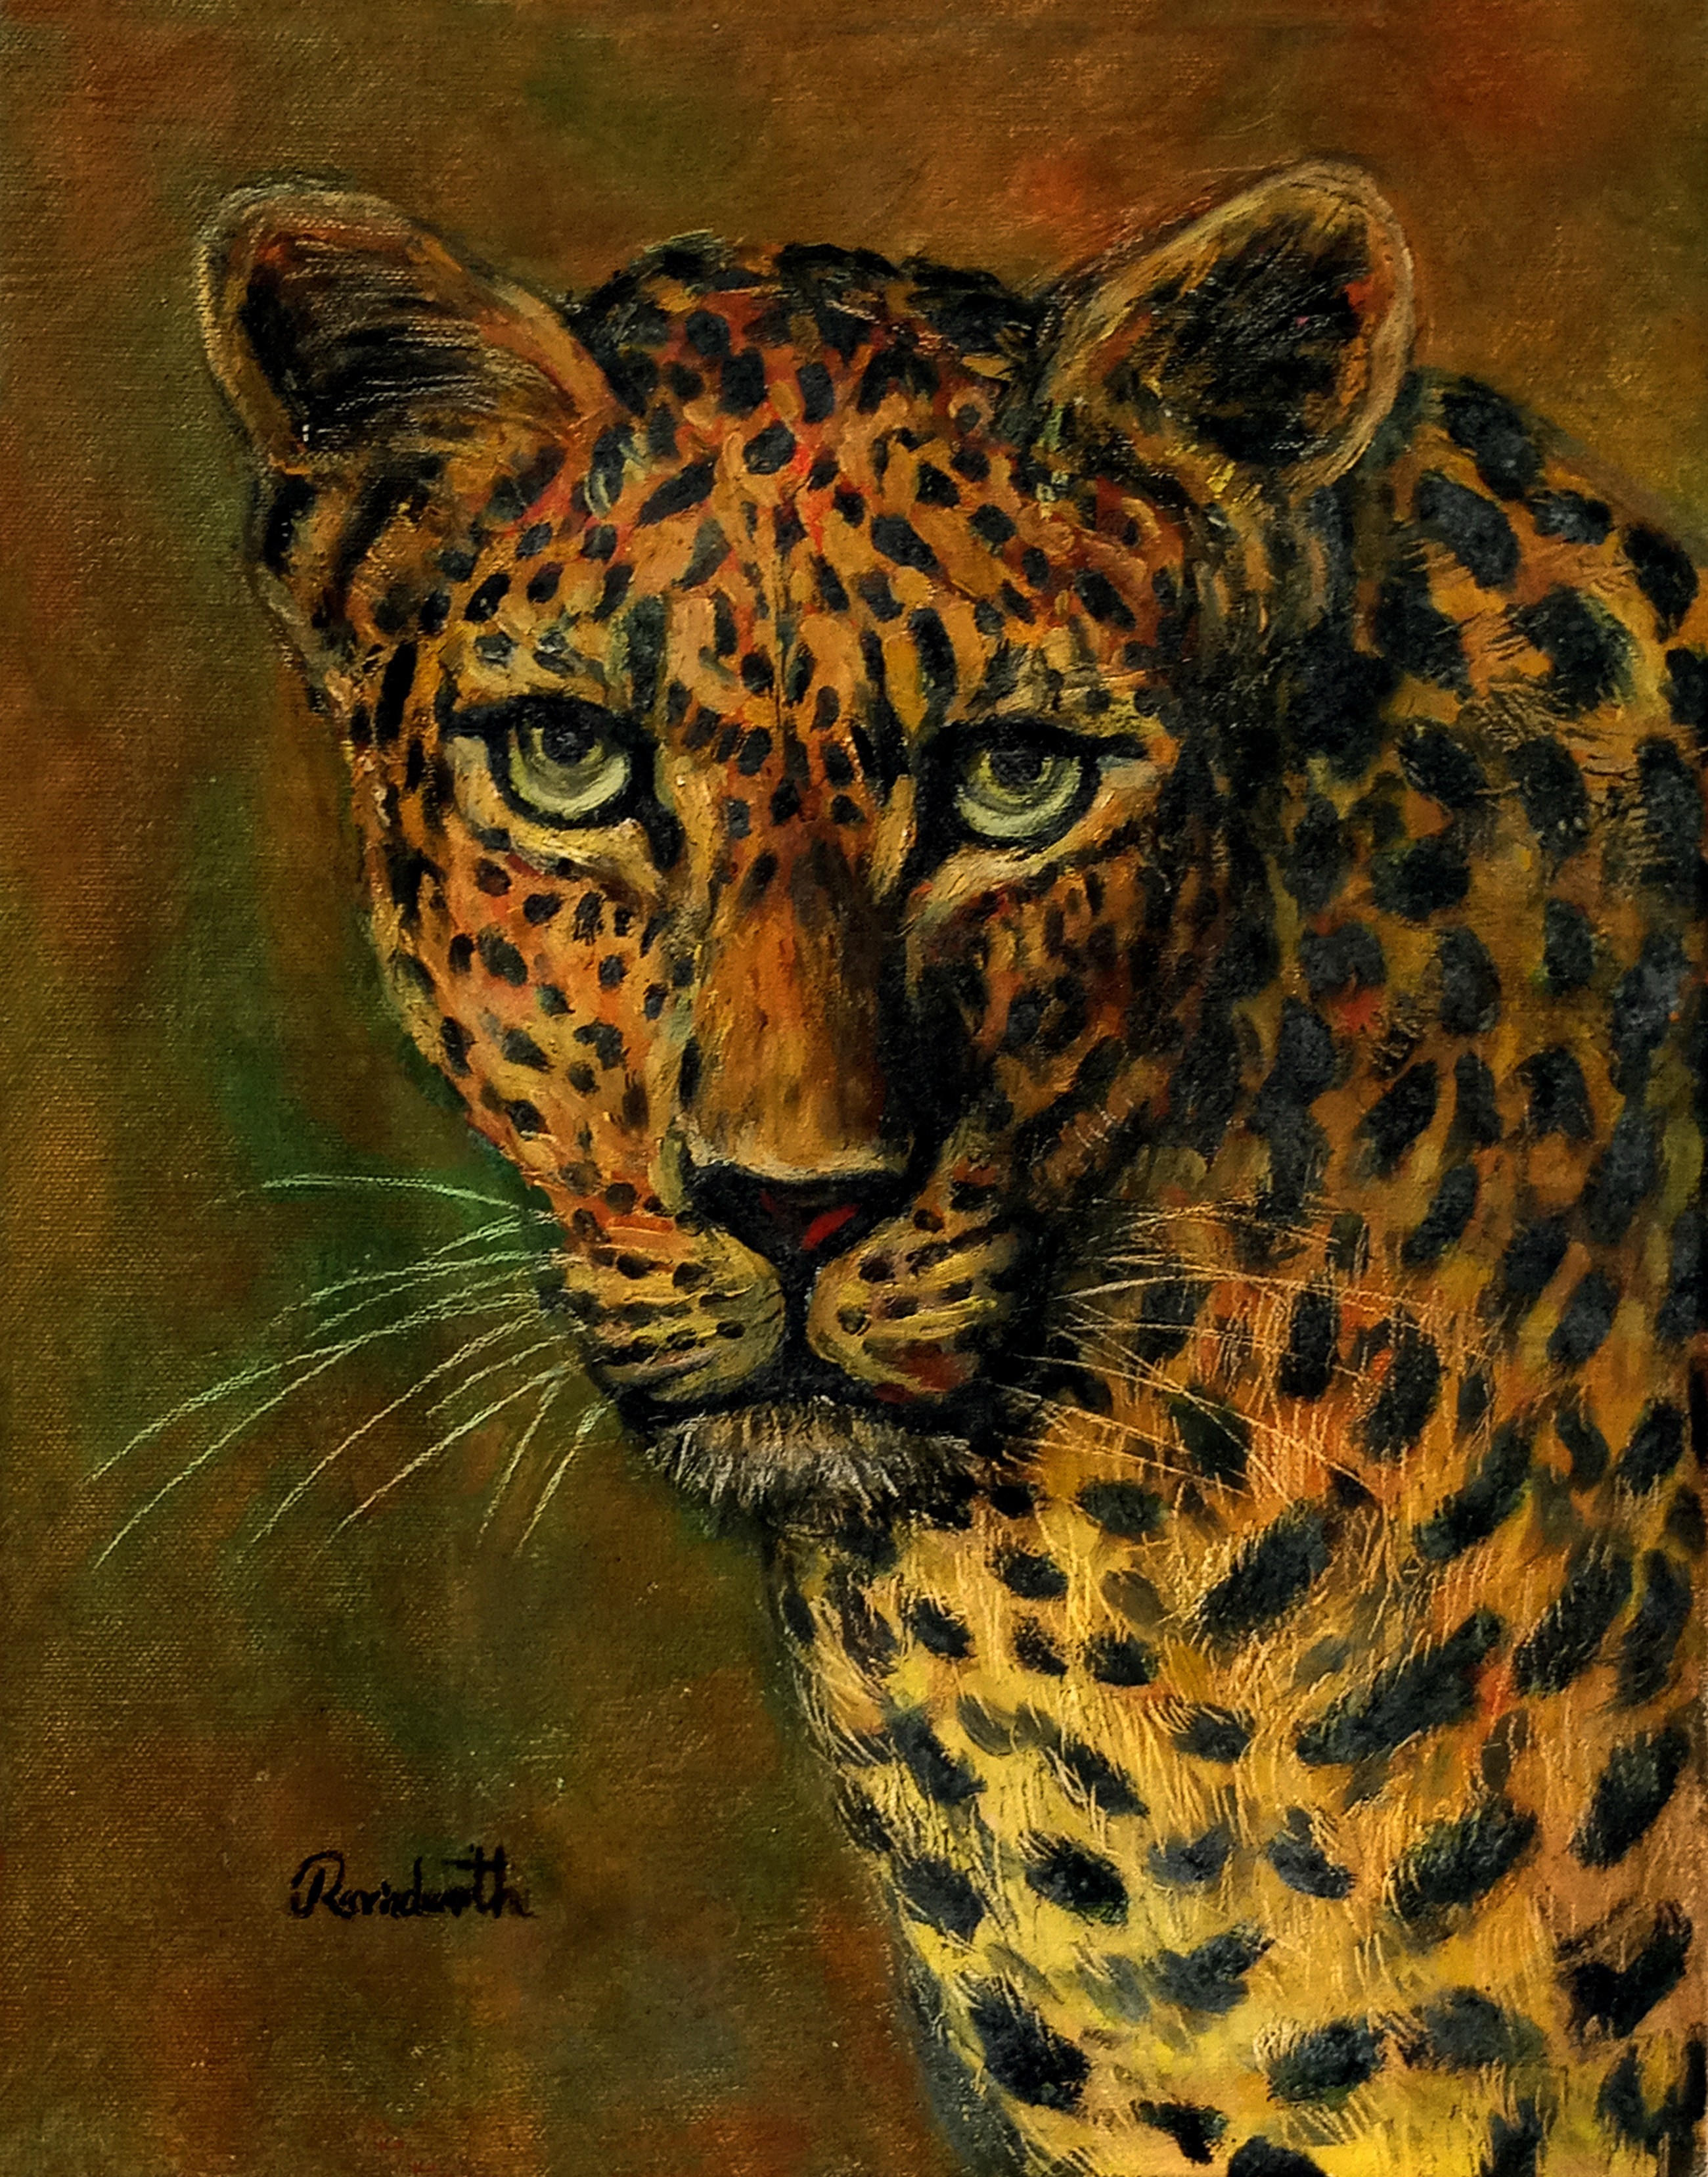 Head of the leopard by Ravindranath Jayasekera